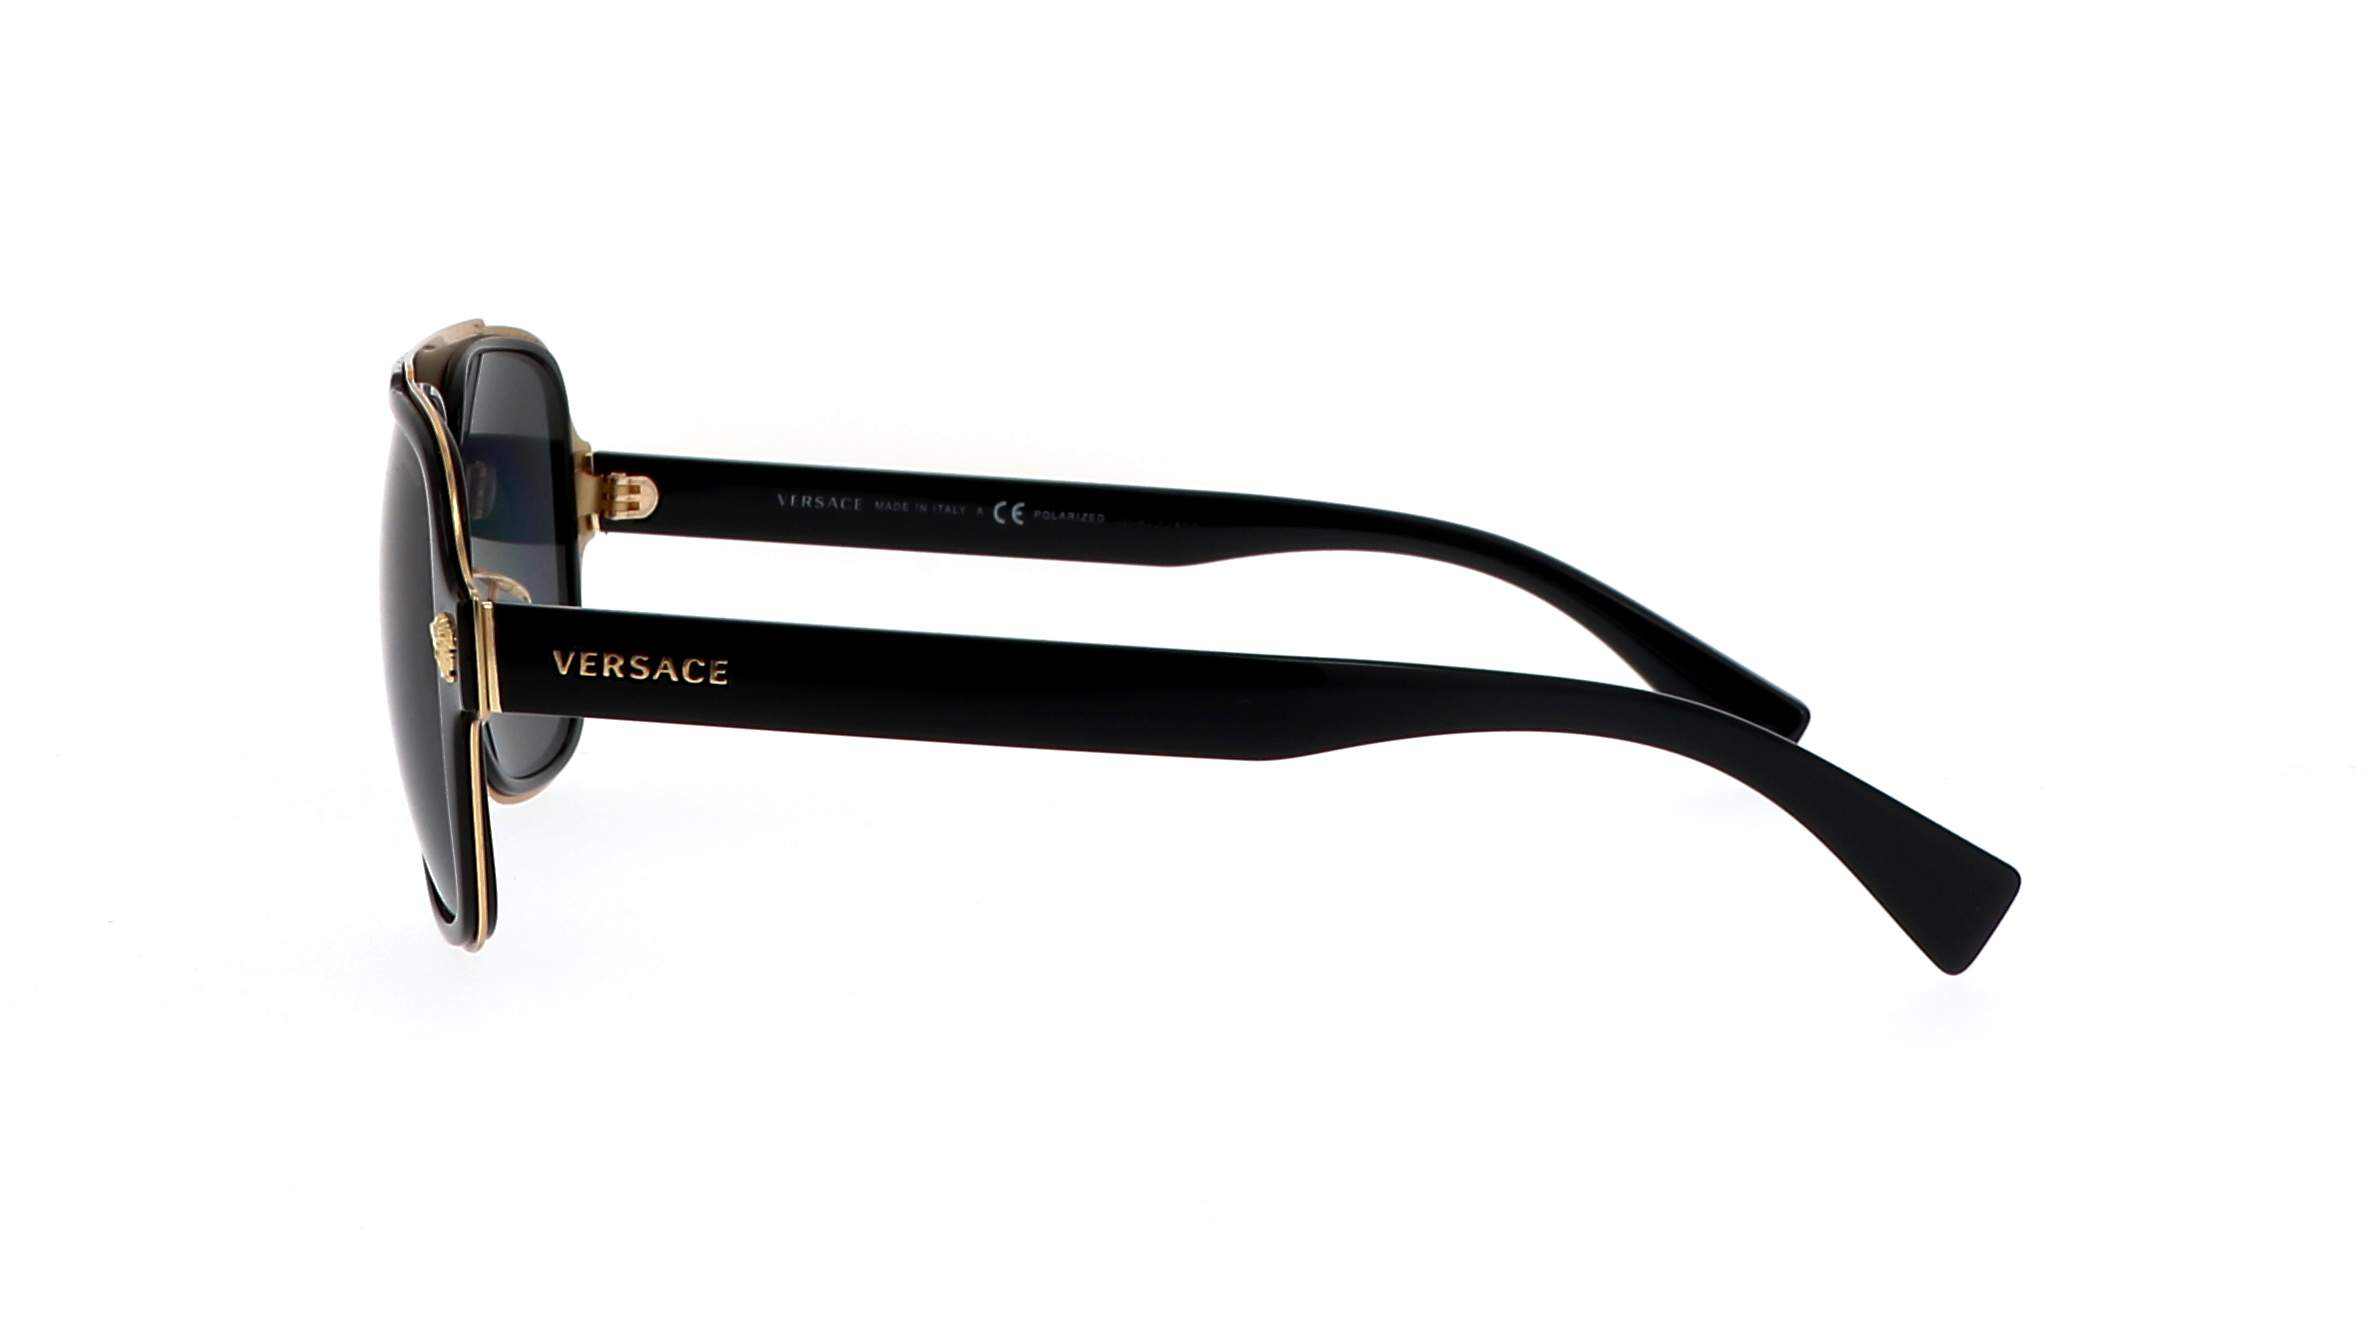 Sunglasses Versace VE2199 1002/81 56-18 Black Polarized in stock ...